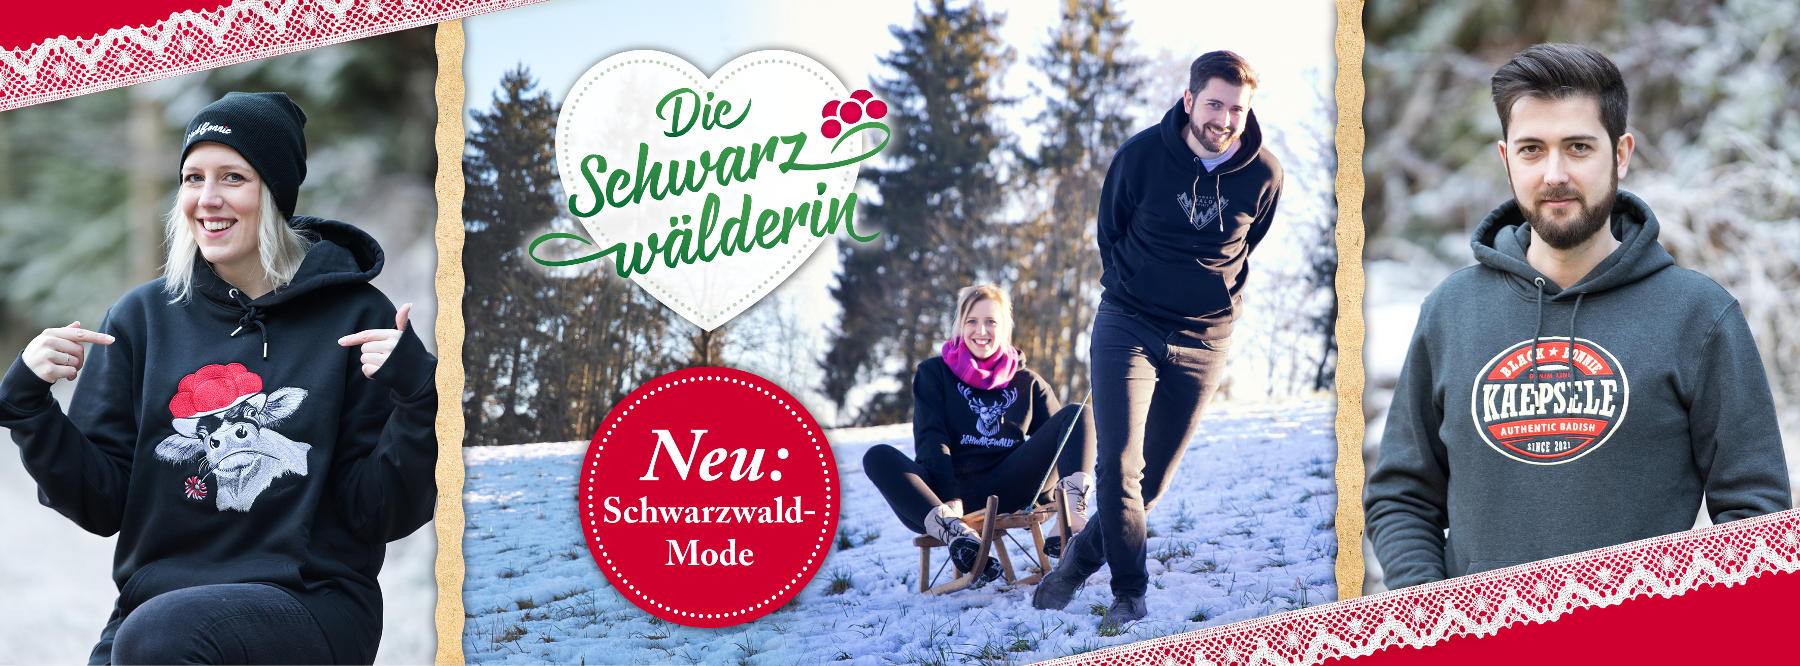 Neue Schwarzwaldmode!